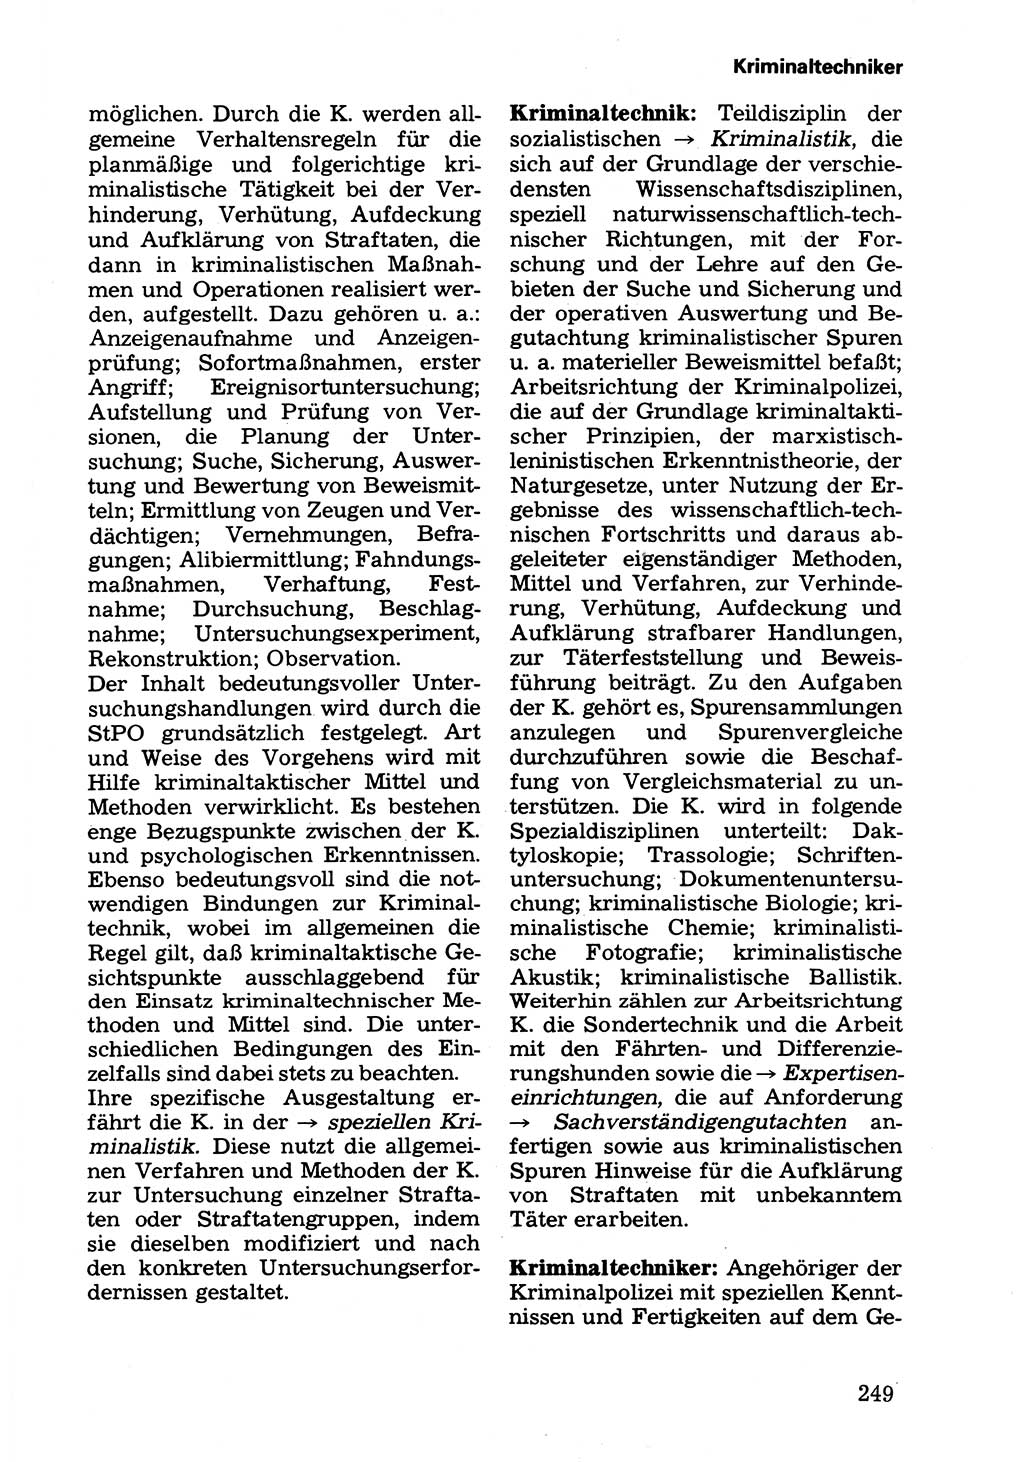 Wörterbuch der sozialistischen Kriminalistik [Deutsche Demokratische Republik (DDR)] 1981, Seite 249 (Wb. soz. Krim. DDR 1981, S. 249)